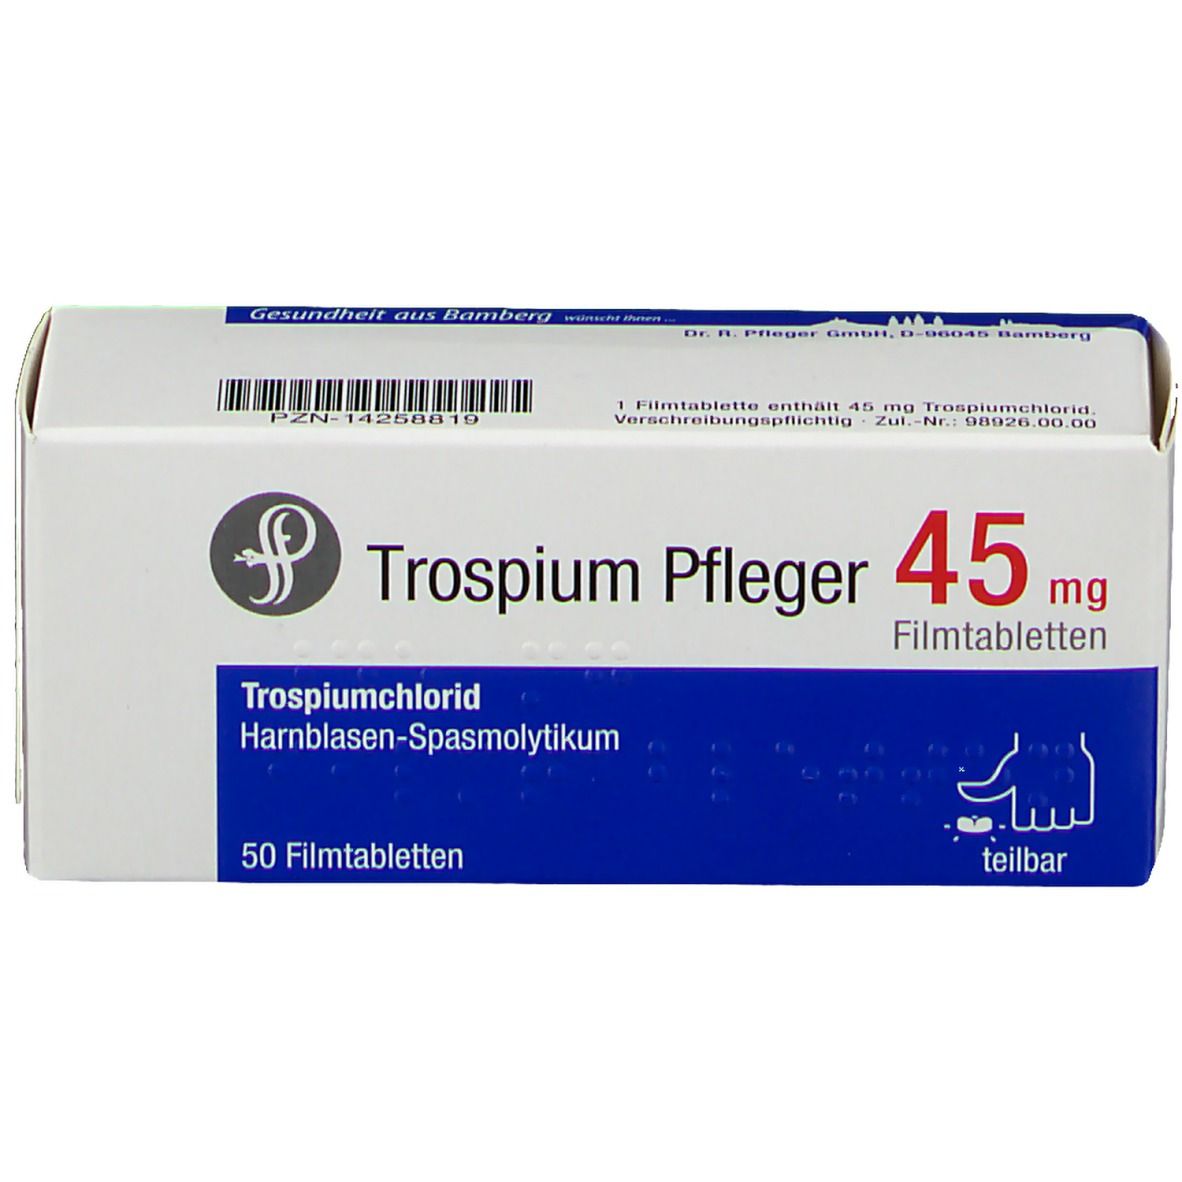 Trospium Pfleger 45 mg